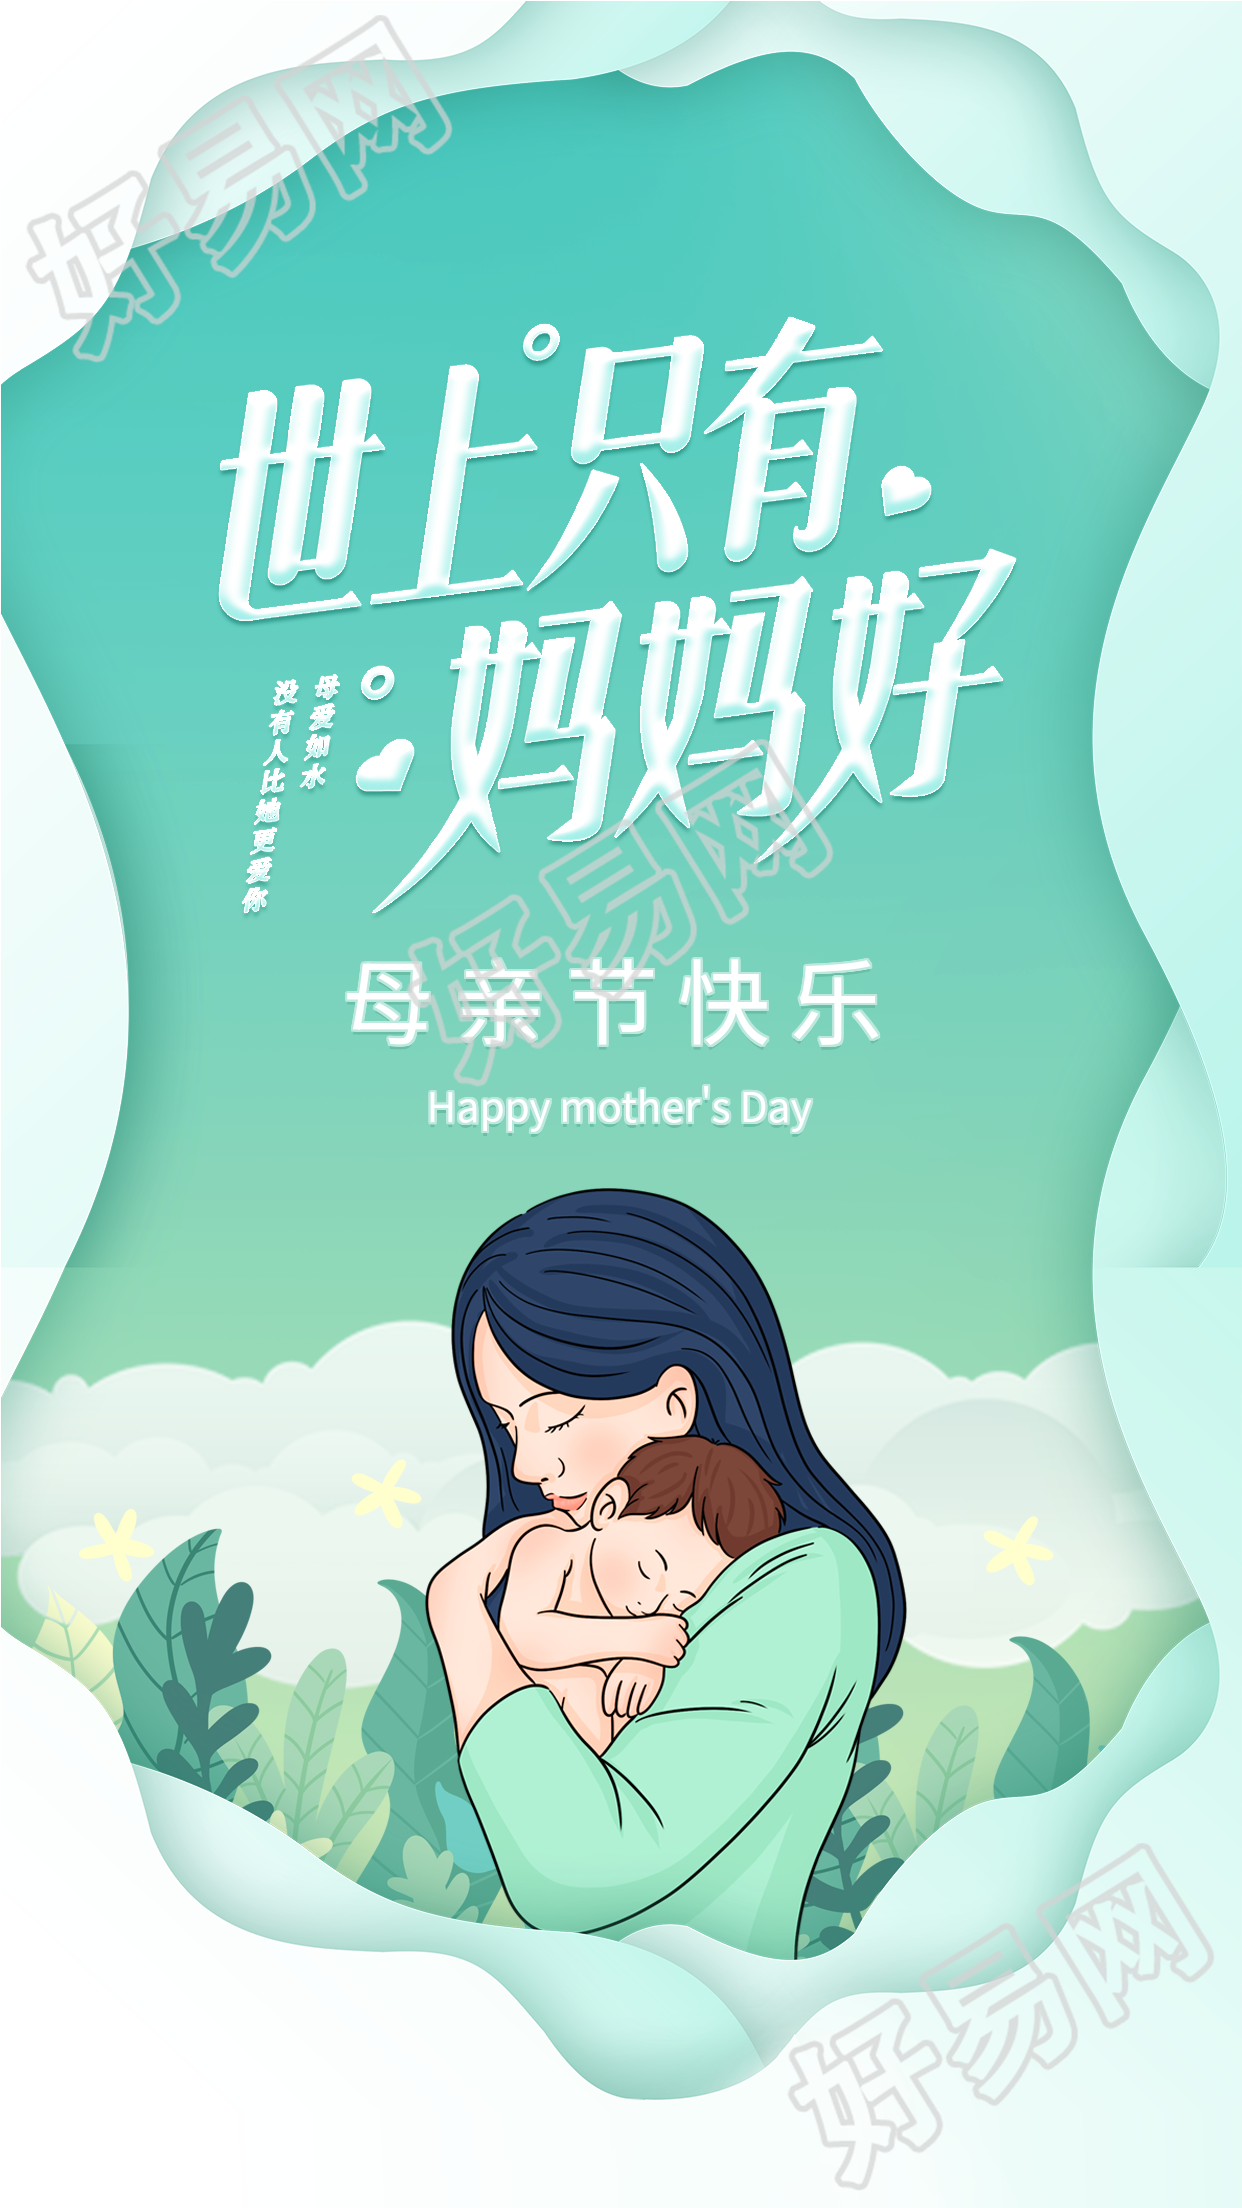 清新绿色母亲节怀抱婴儿宣传海报